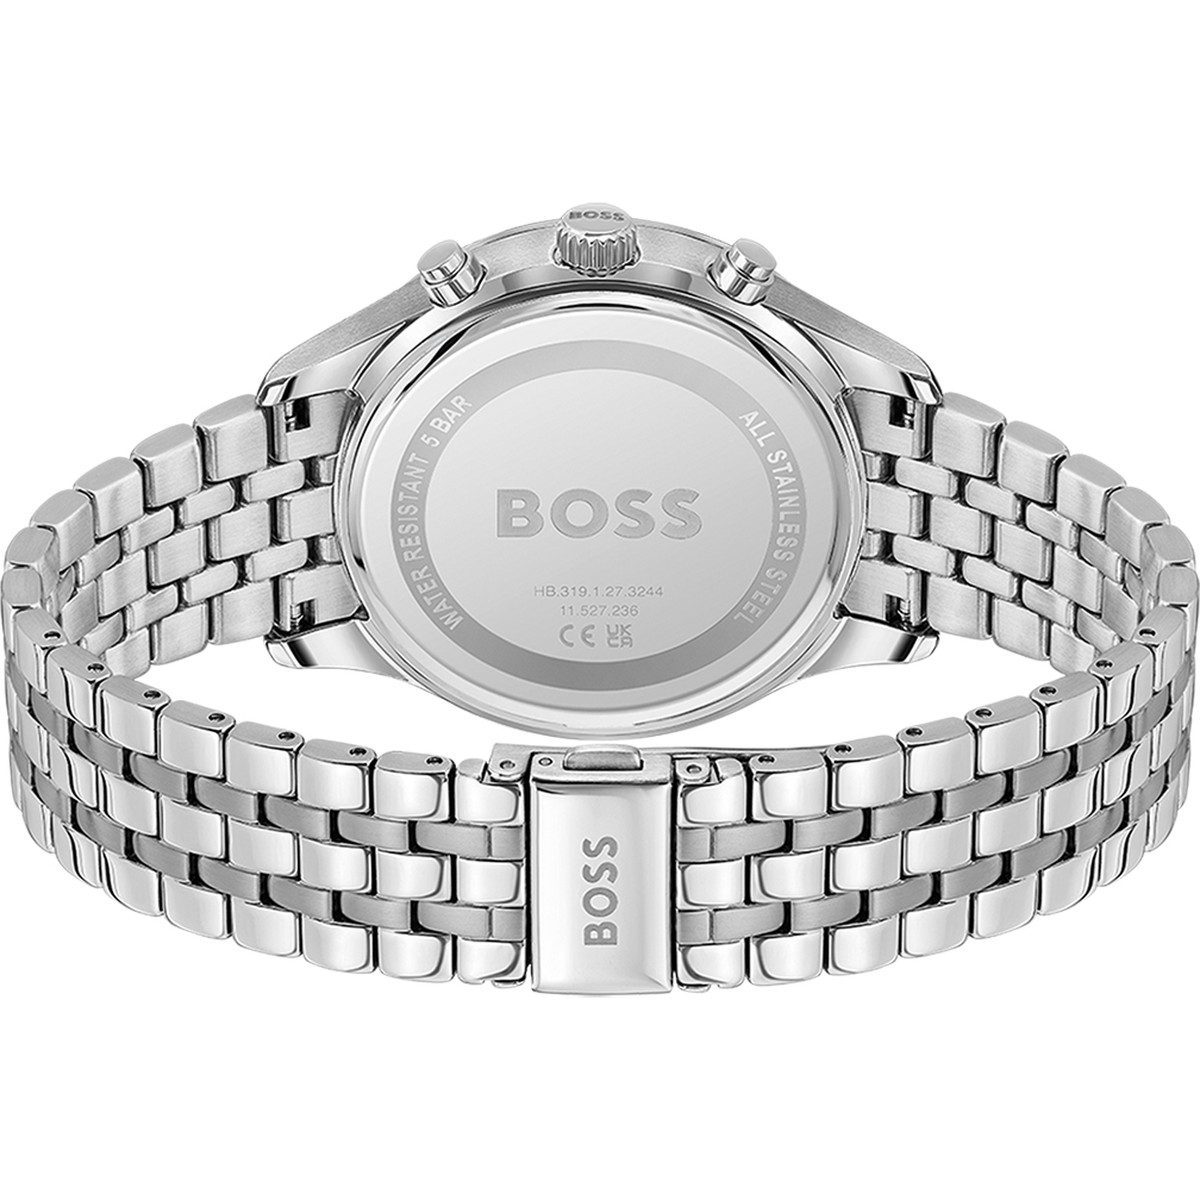 Montre BOSS business homme chronographe bracelet acier inoxydable argent - vue 3